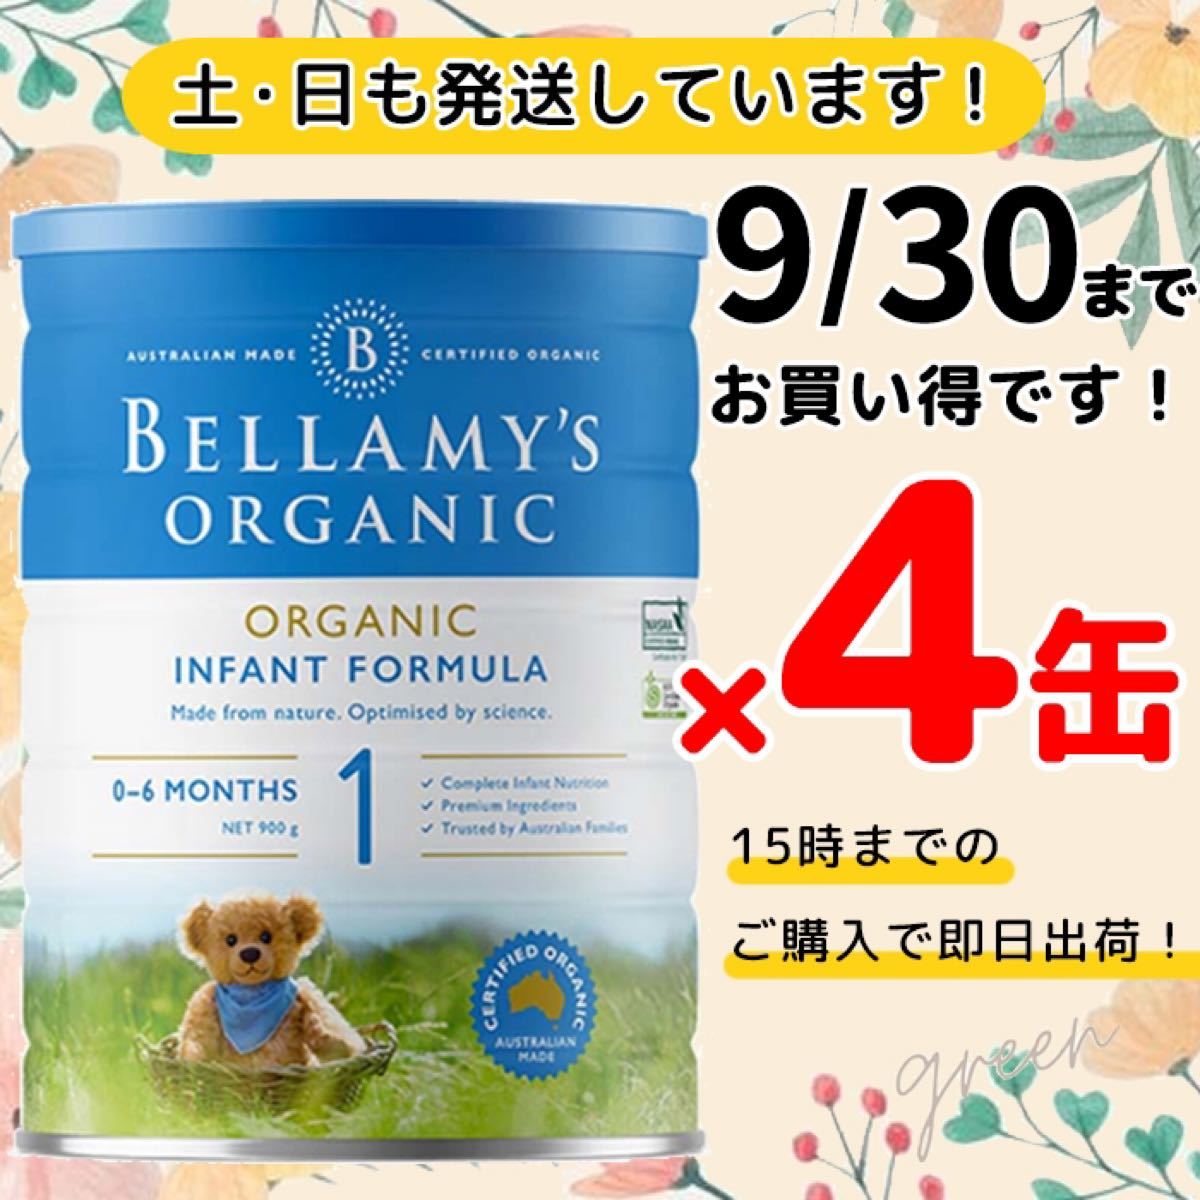 ベラミーズ オーガニック粉ミルク ステップ1 (0〜6ヶ月)900g 4缶《1缶6